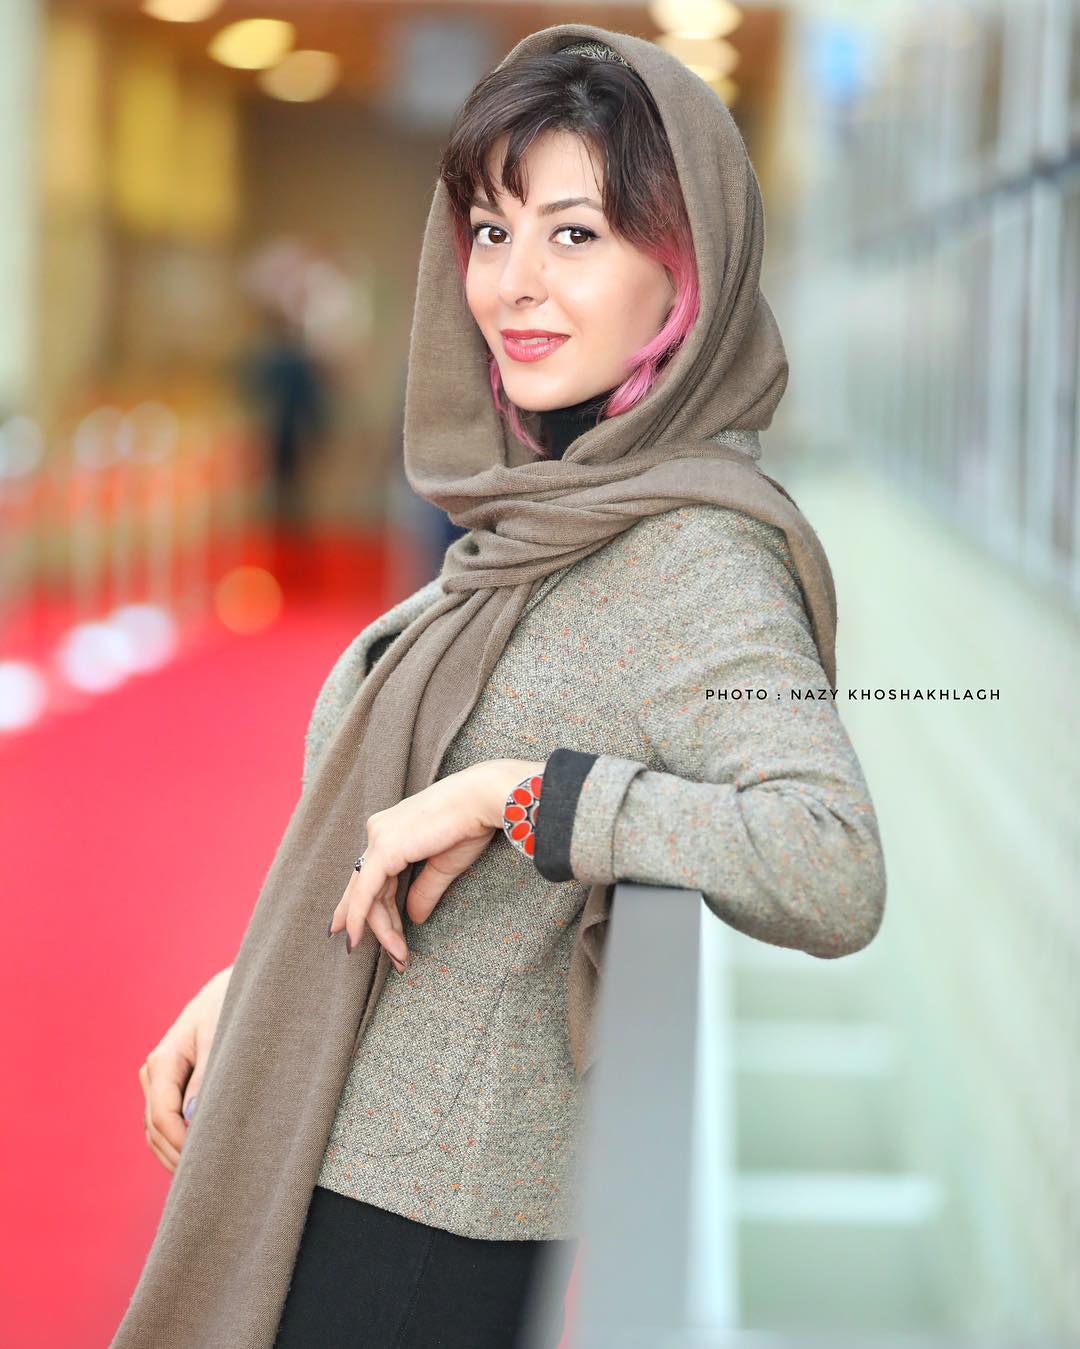 بازیگر سریال «شرایط خاص» در جشنواره جهانی فجر